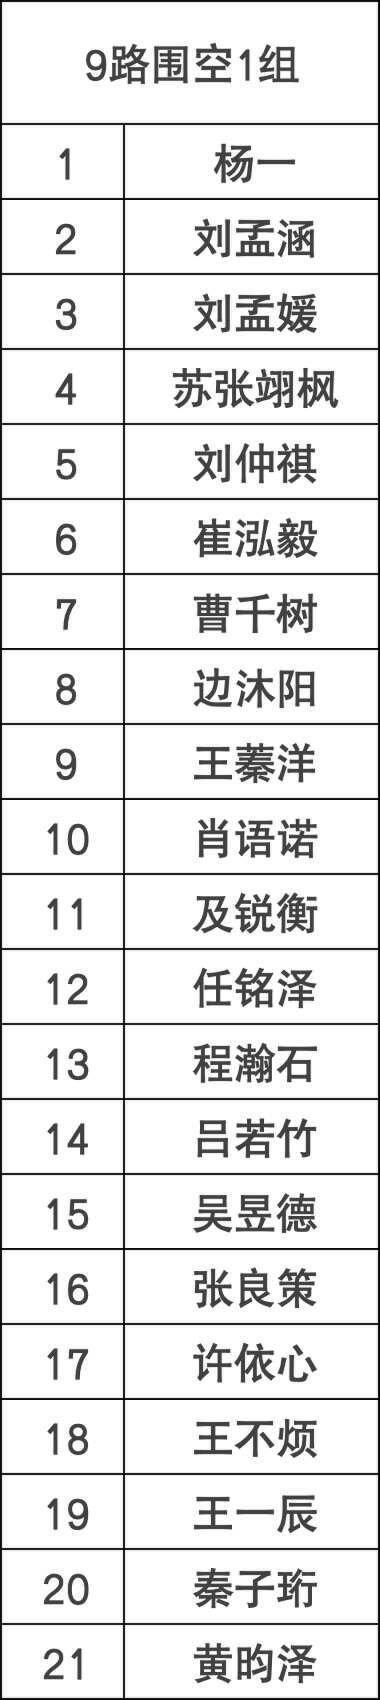 少年纵横棋王赛5月北京站参赛名单及补充规定